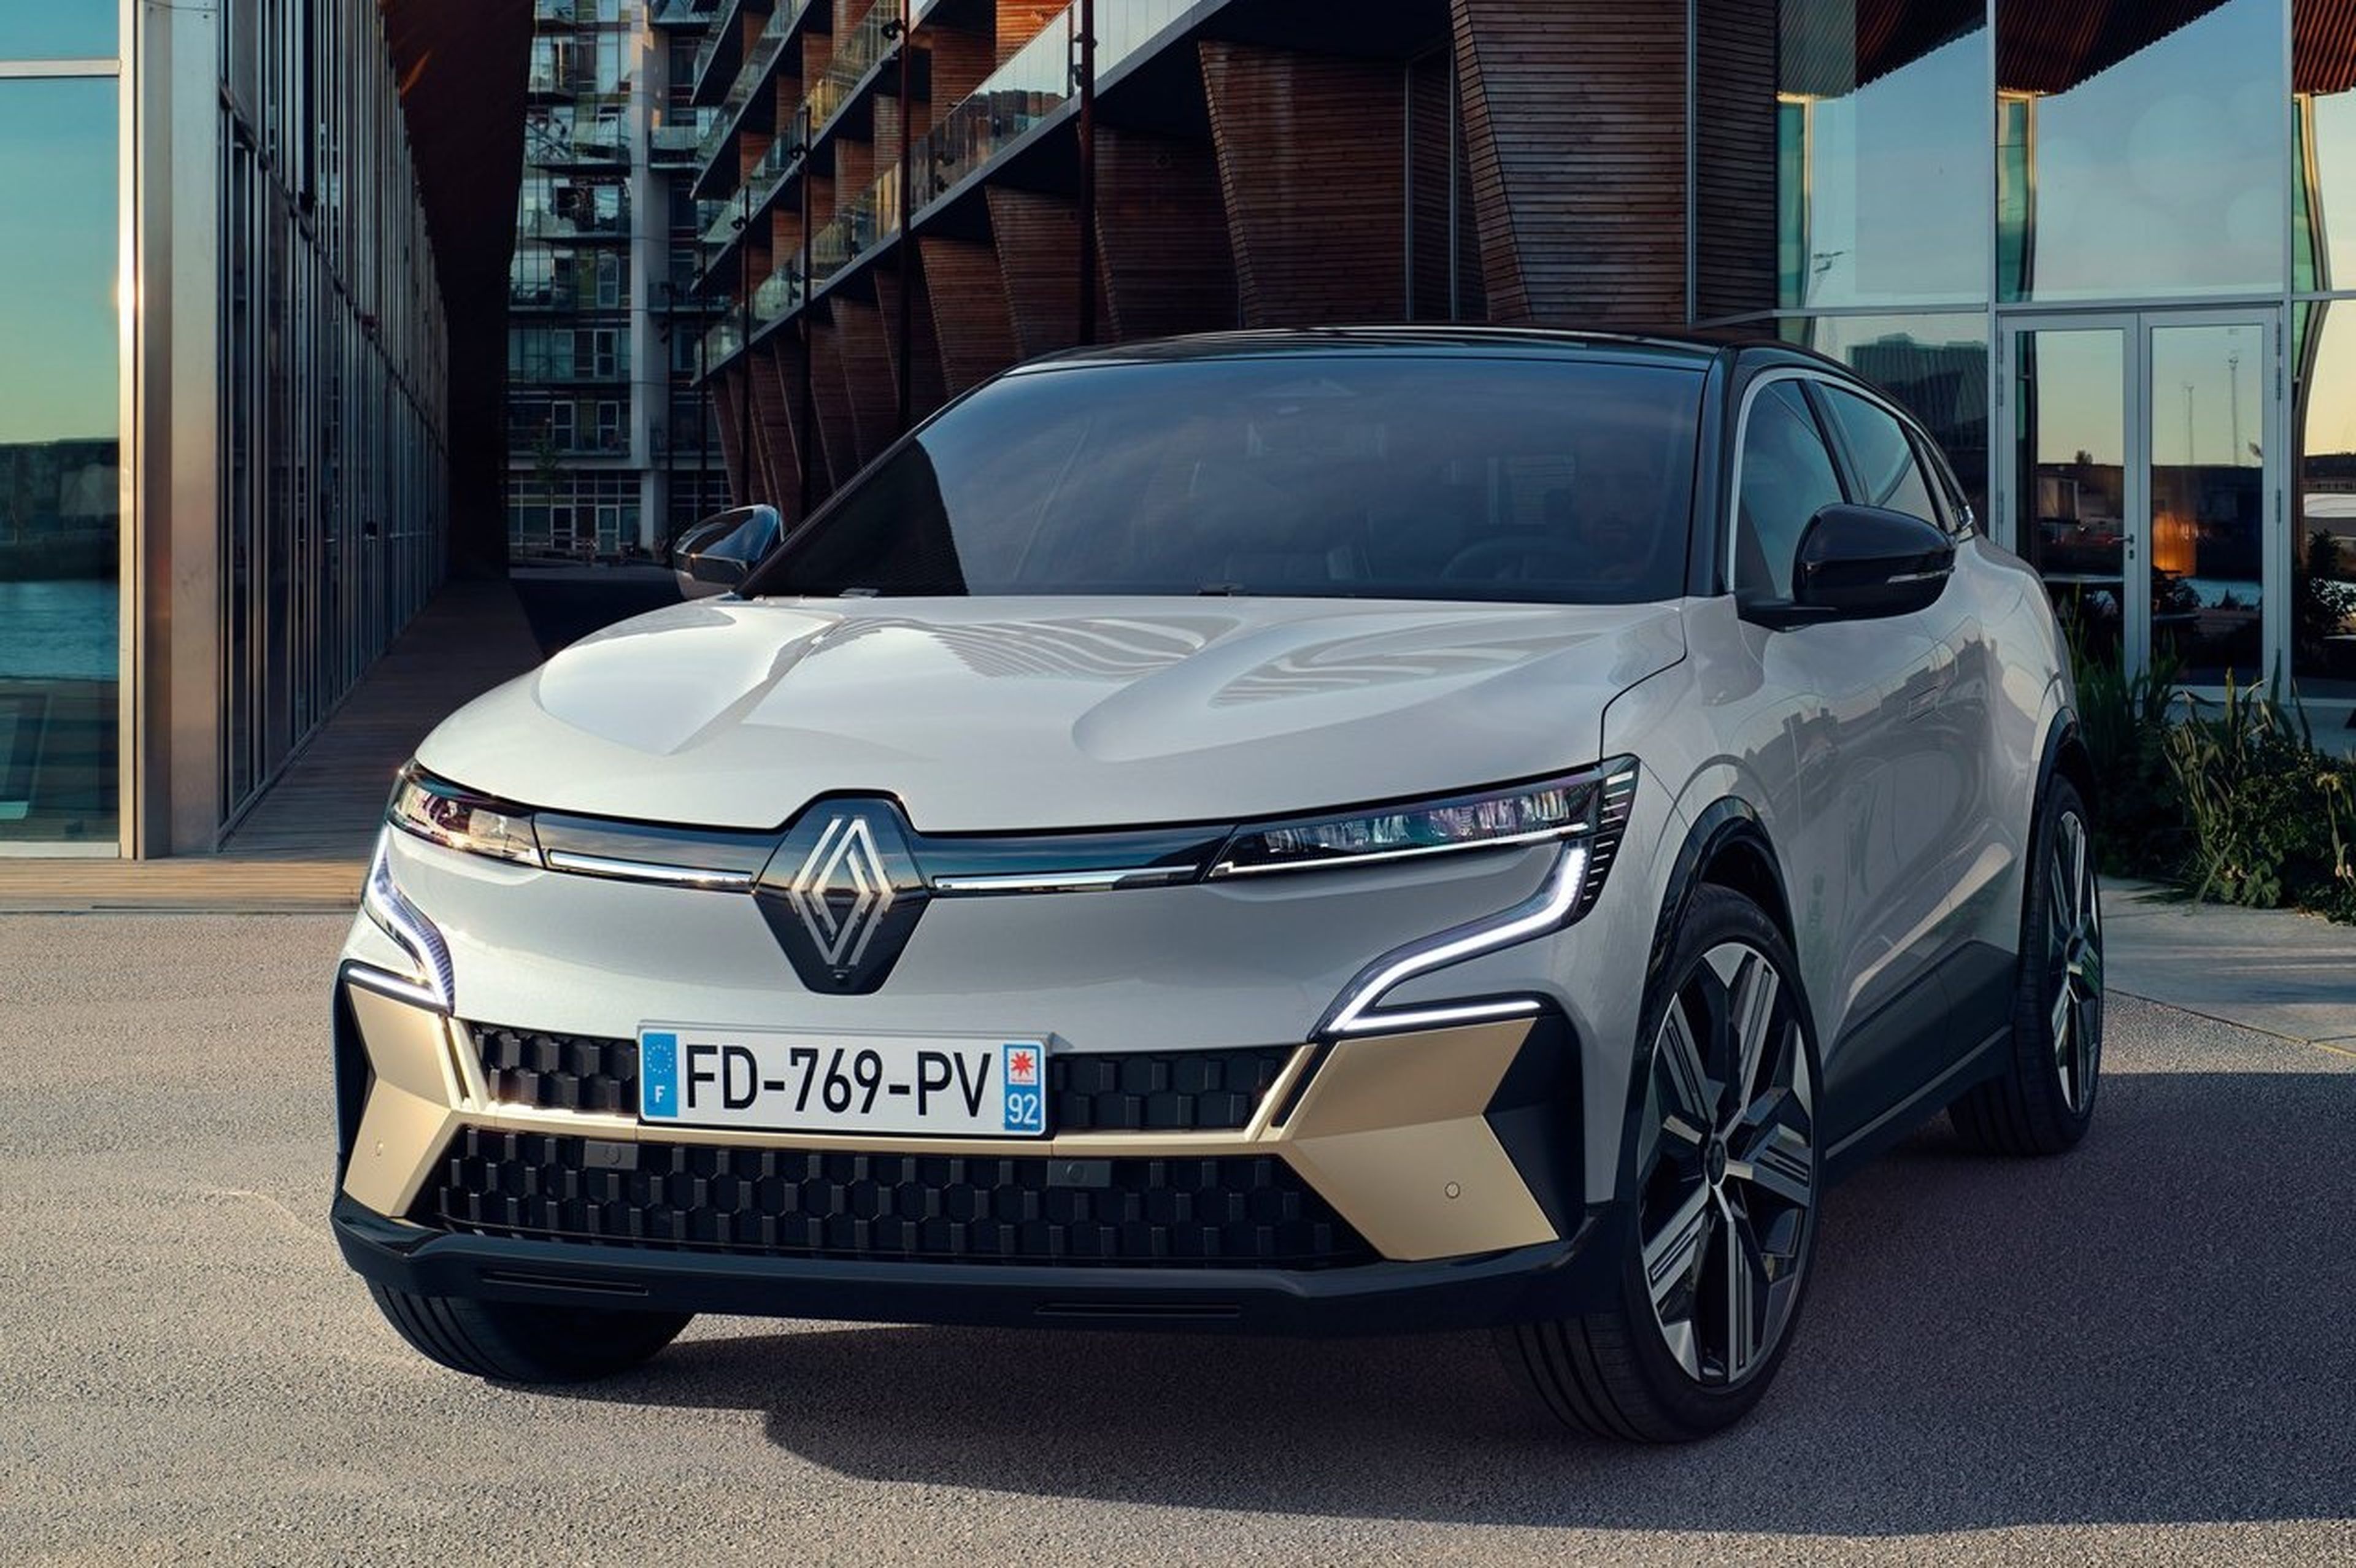 La nueva generación del Renault Mégane rompe por completo con el paso